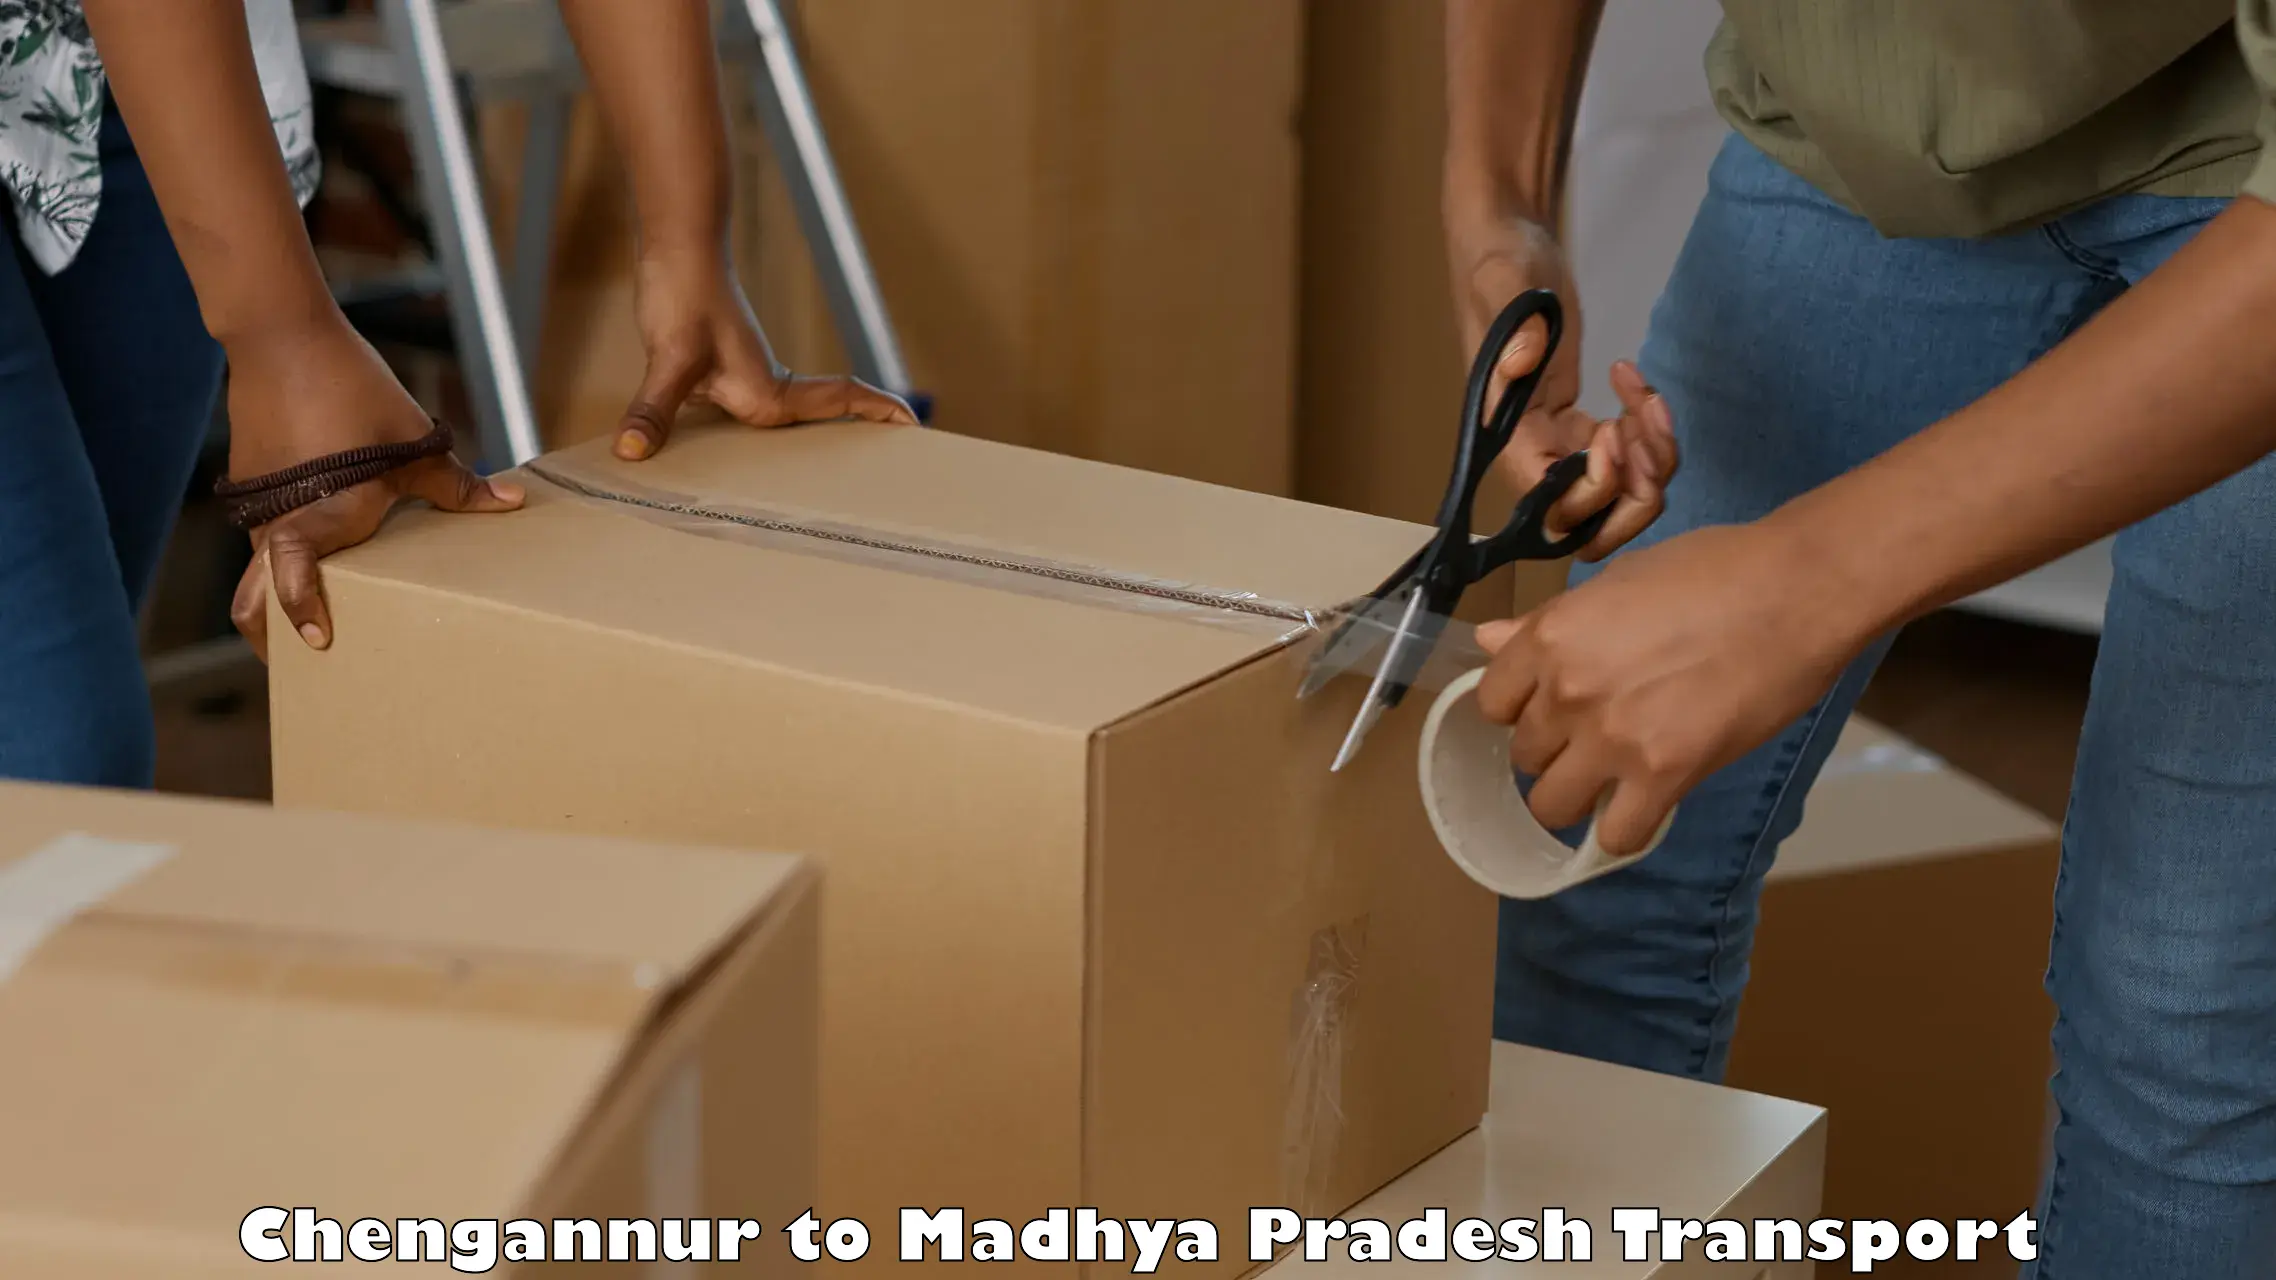 India truck logistics services Chengannur to Beohari